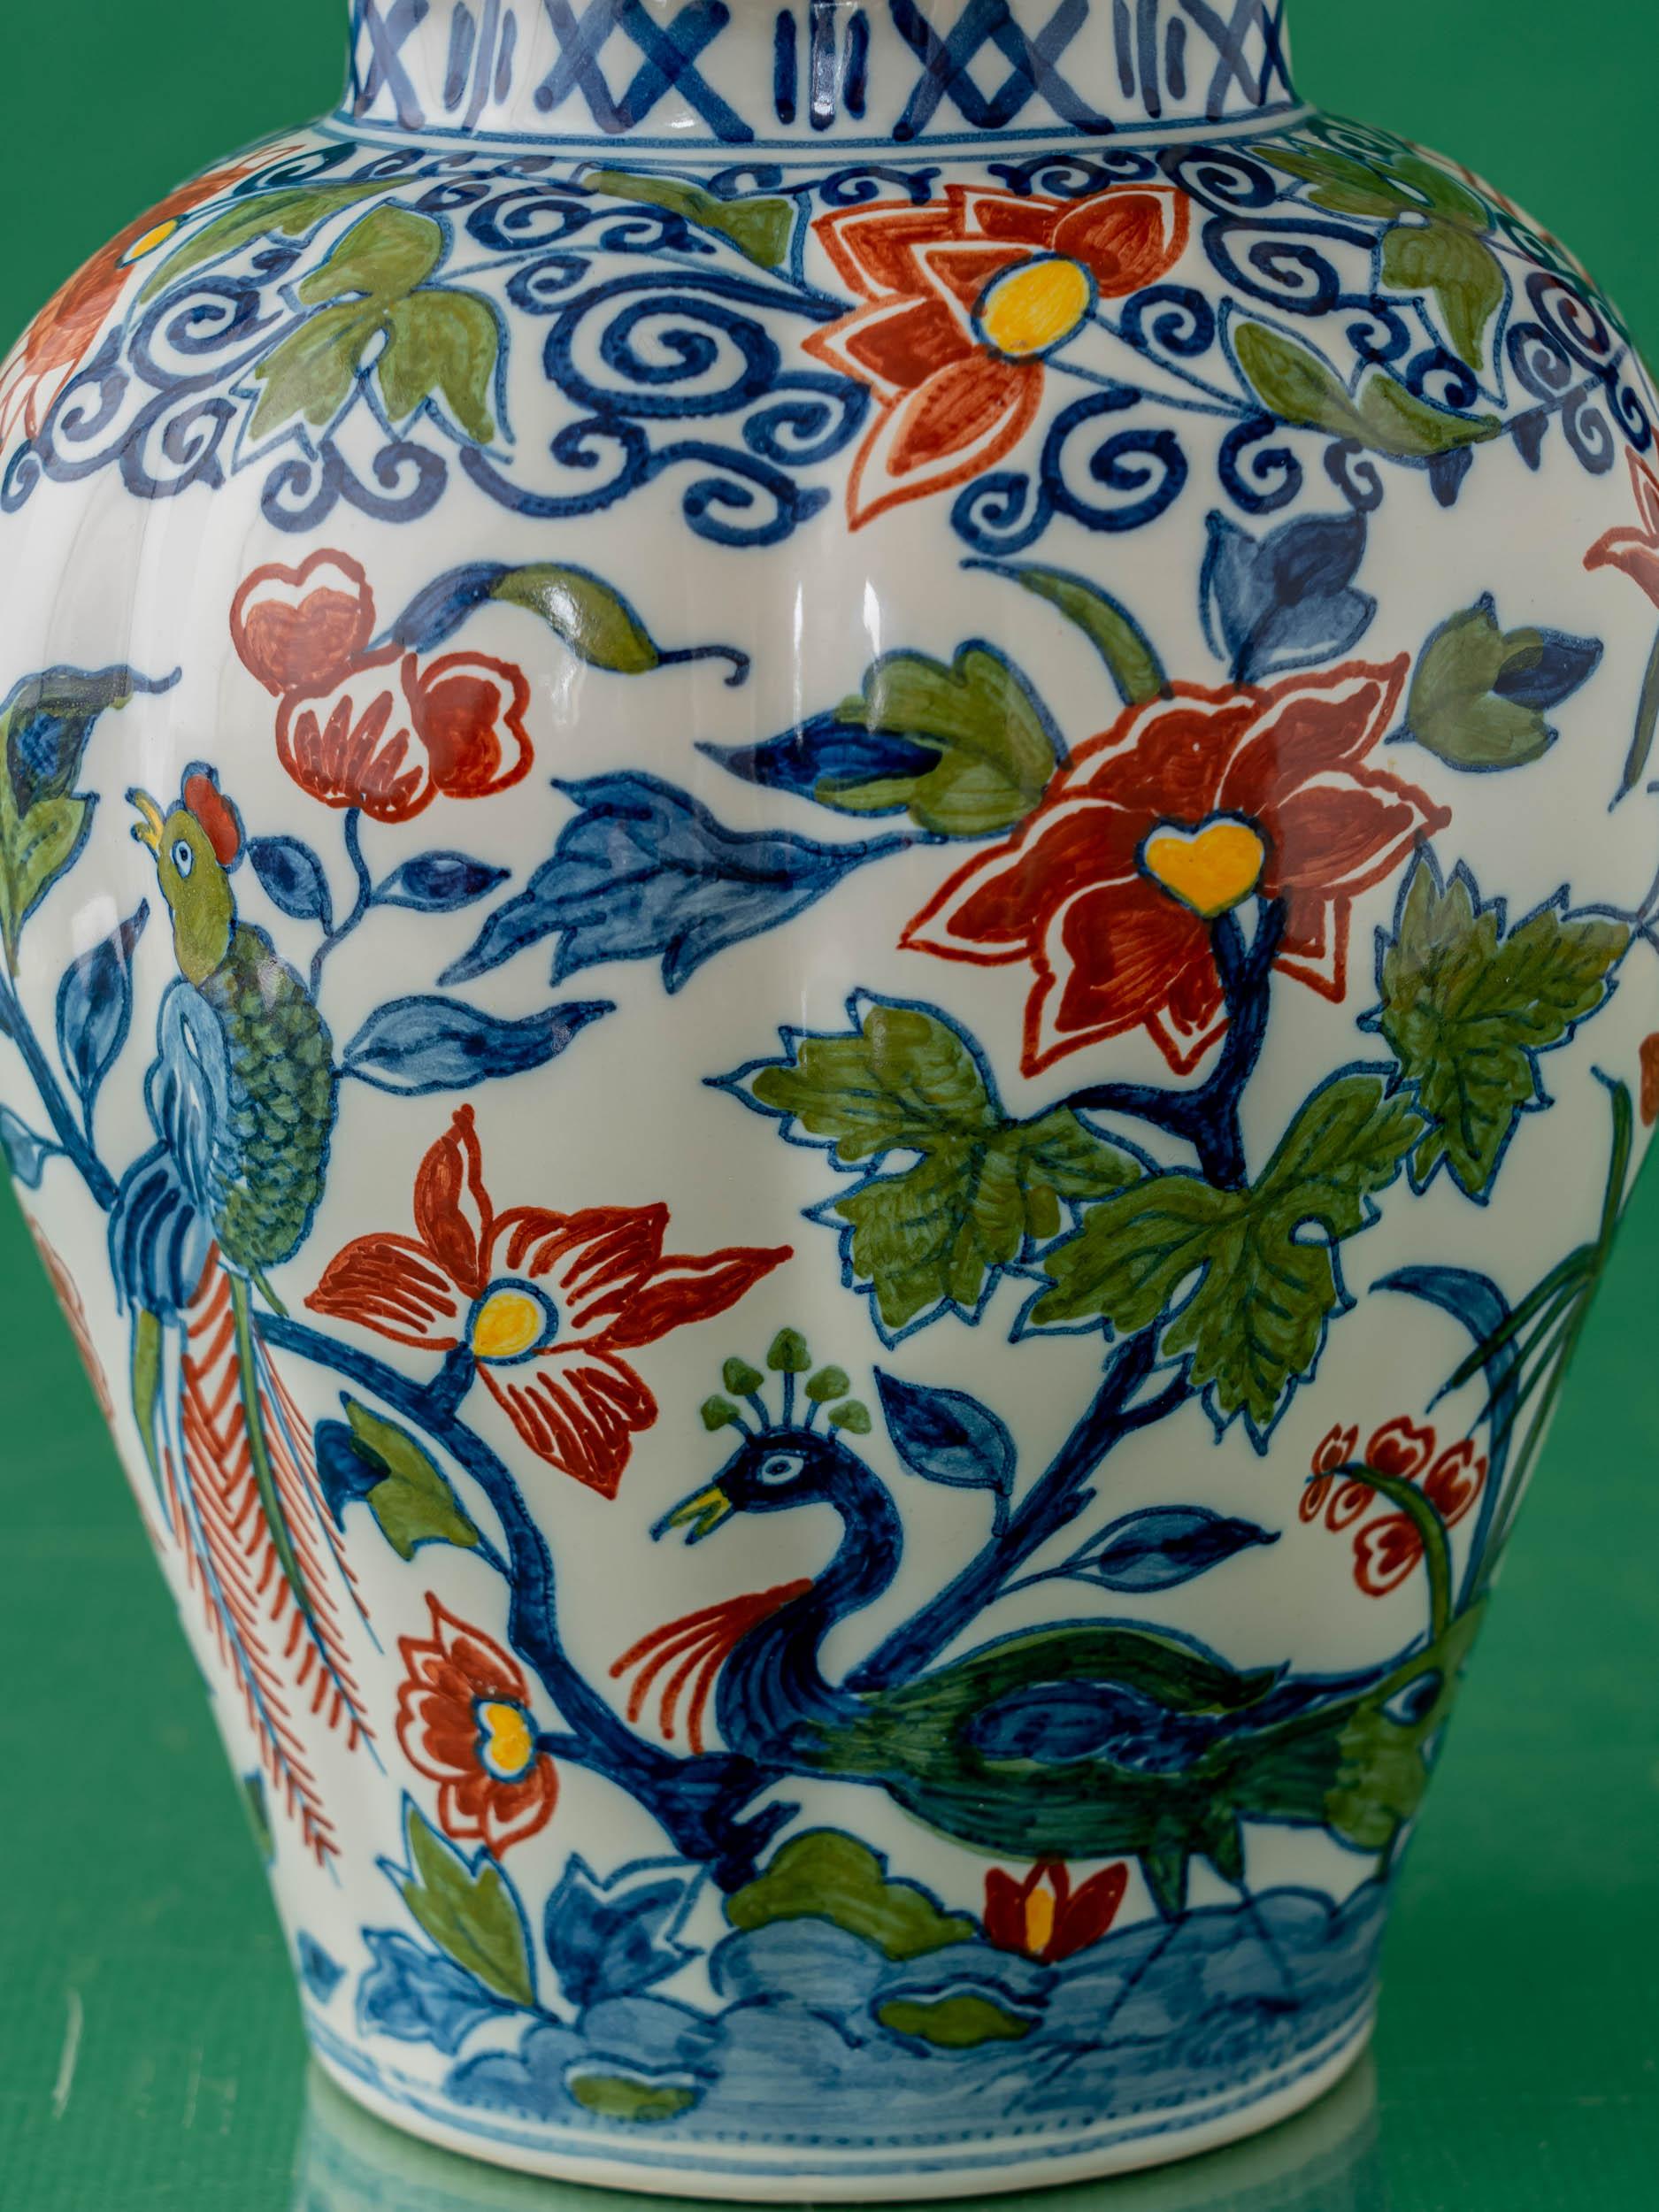 Dutch Royal Tichelaar Makkum Delft Table Lamps, Hand-Painted For Sale